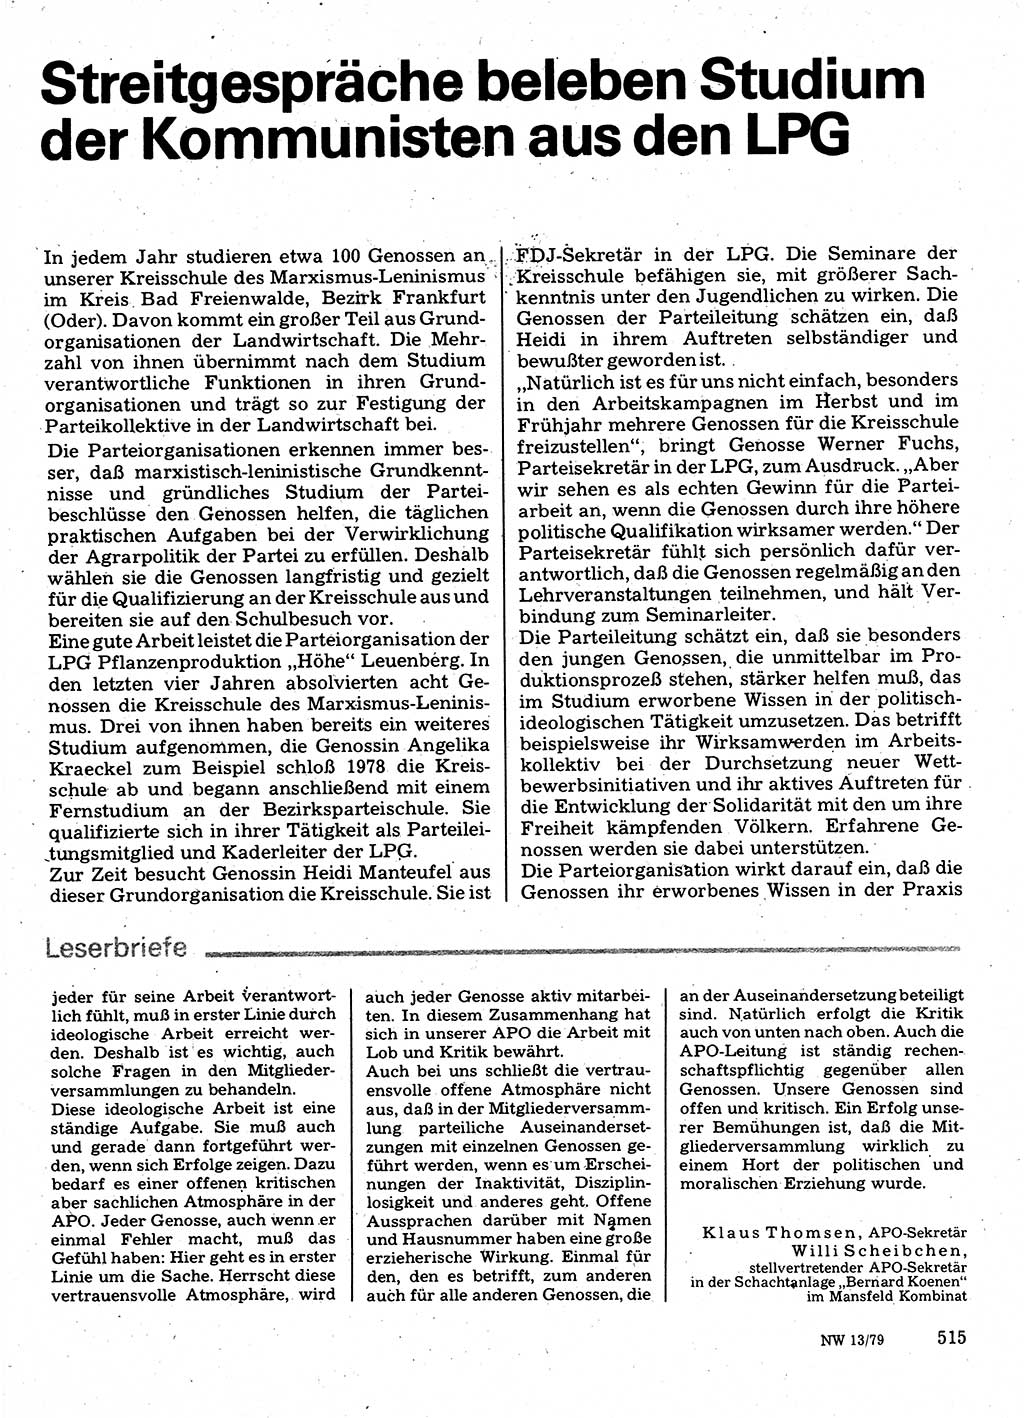 Neuer Weg (NW), Organ des Zentralkomitees (ZK) der SED (Sozialistische Einheitspartei Deutschlands) für Fragen des Parteilebens, 34. Jahrgang [Deutsche Demokratische Republik (DDR)] 1979, Seite 515 (NW ZK SED DDR 1979, S. 515)